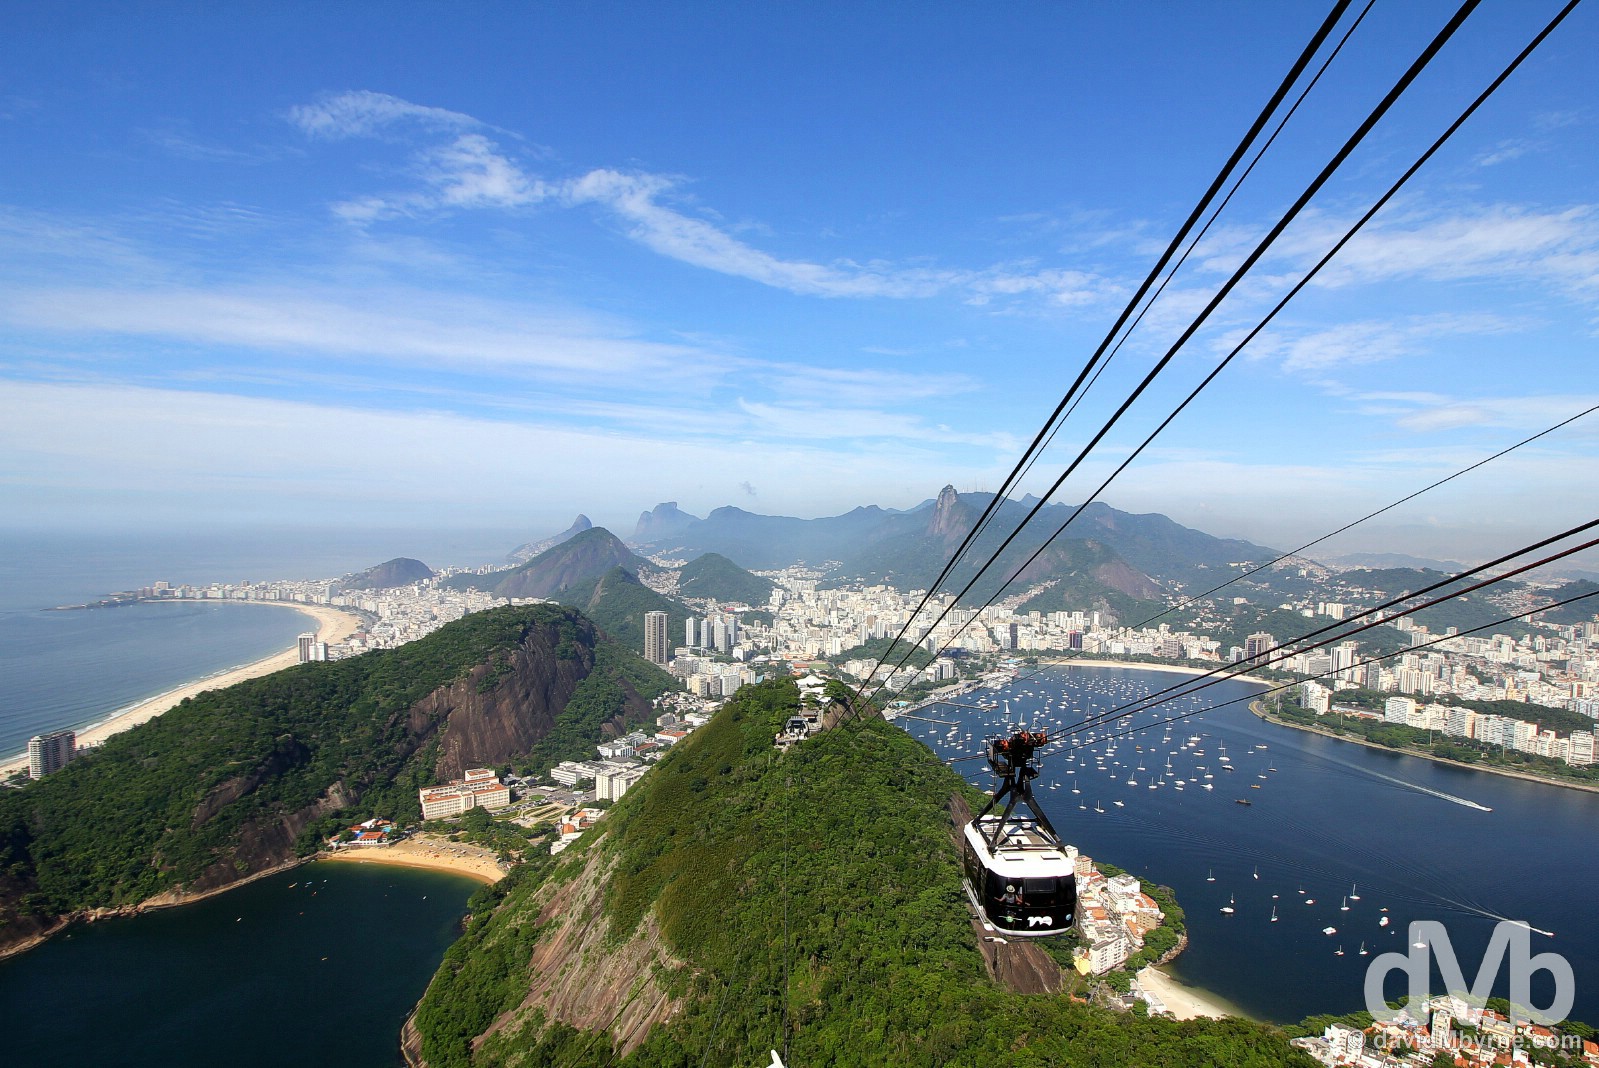 Rio de Janeiro as seen from atop Sugarloaf Mountan. Rio de Janeiro, Brazil. December 12, 2015.